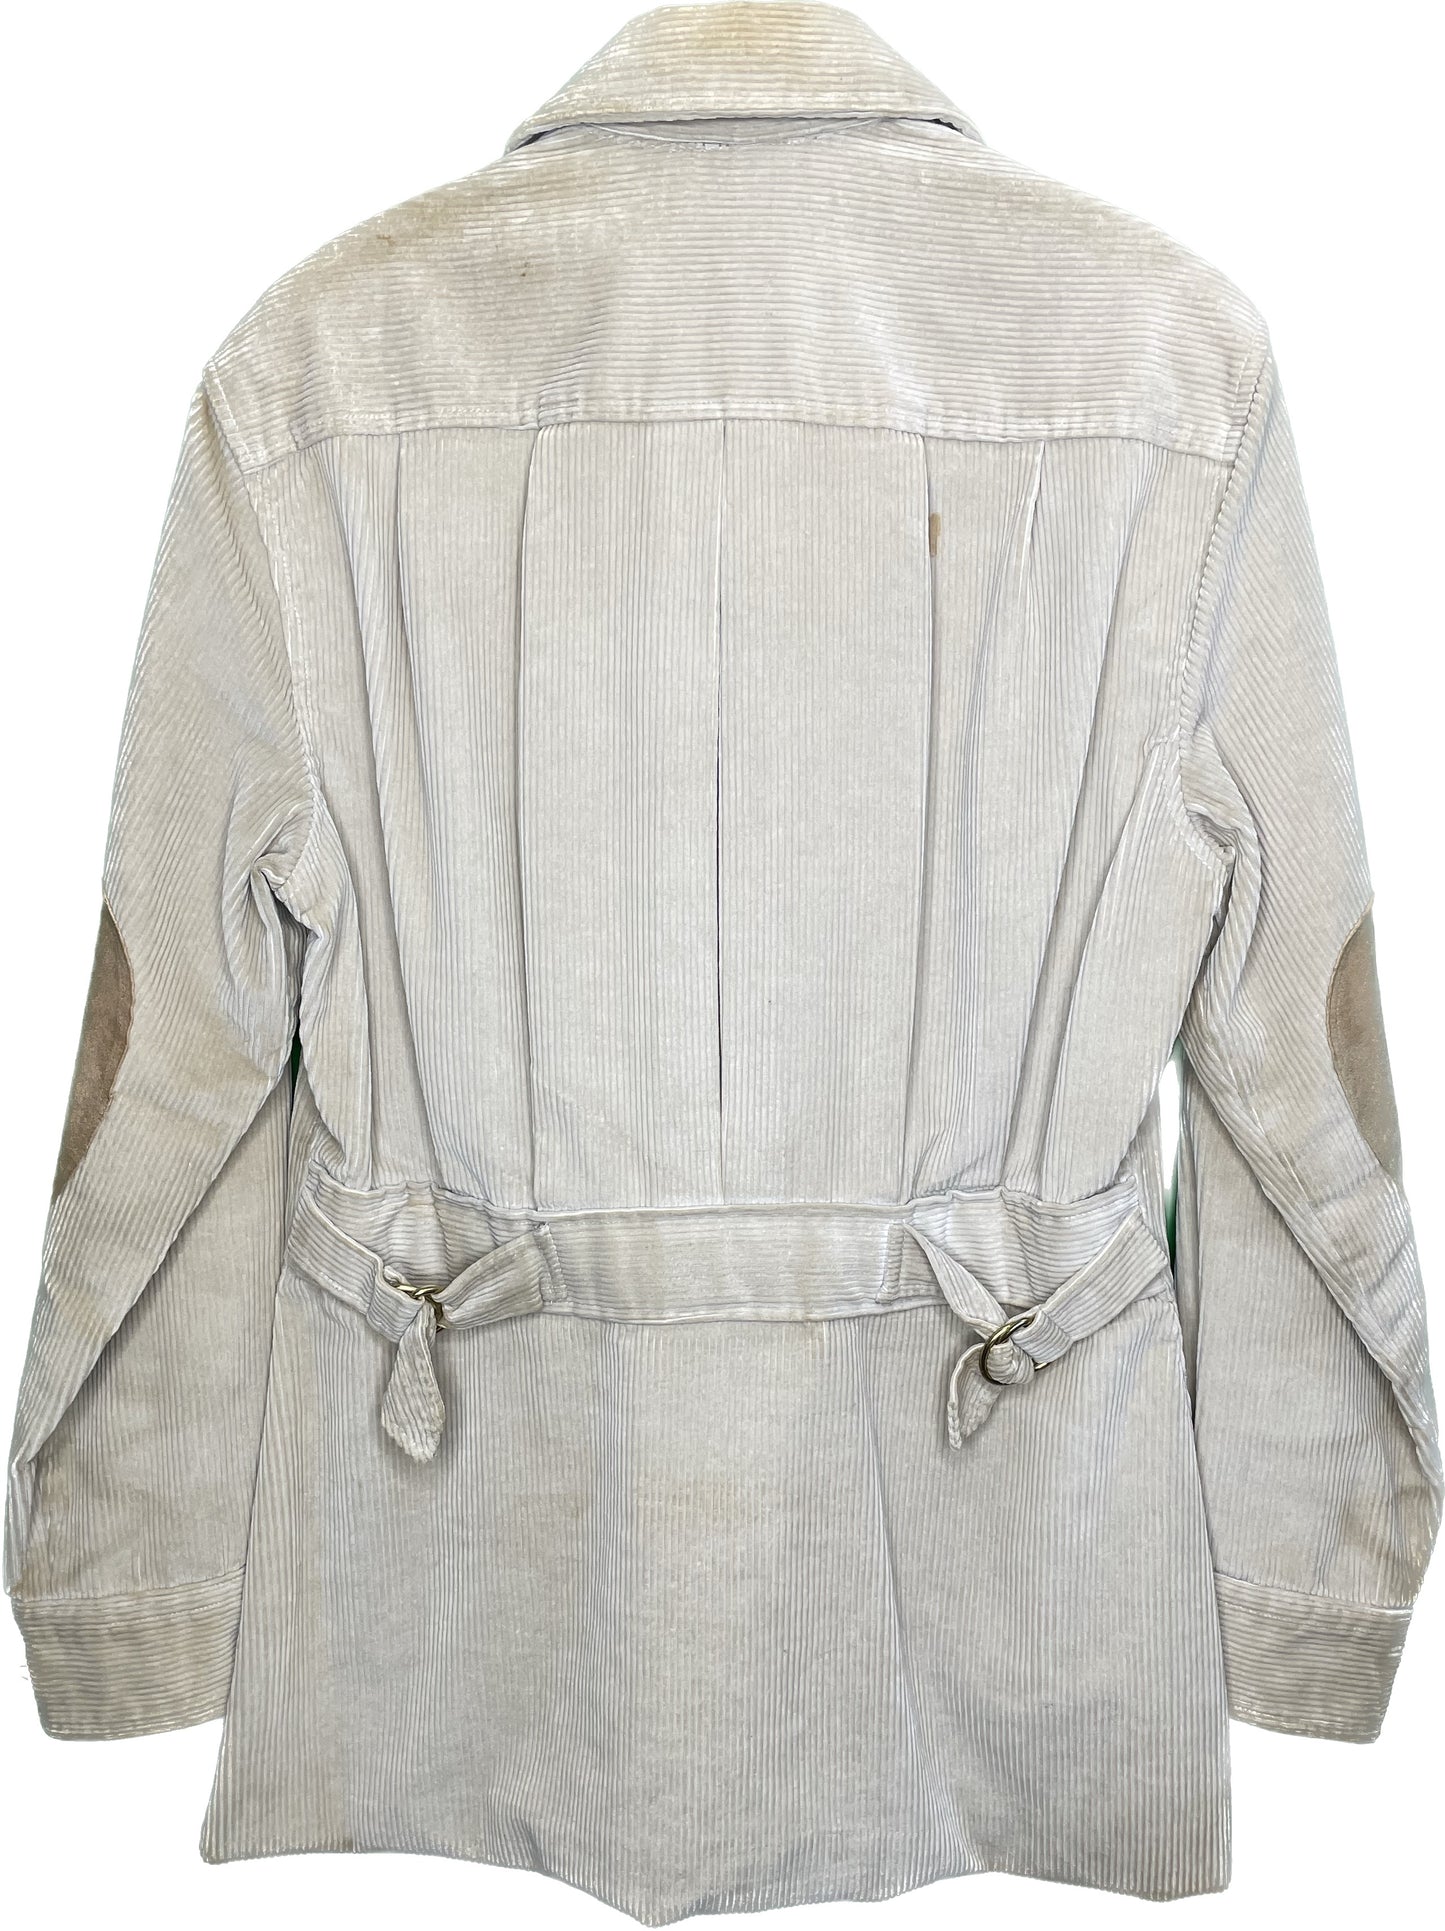 Vintage M Polo Ralph Lauren Tan Corduroy Zip Up Jacket